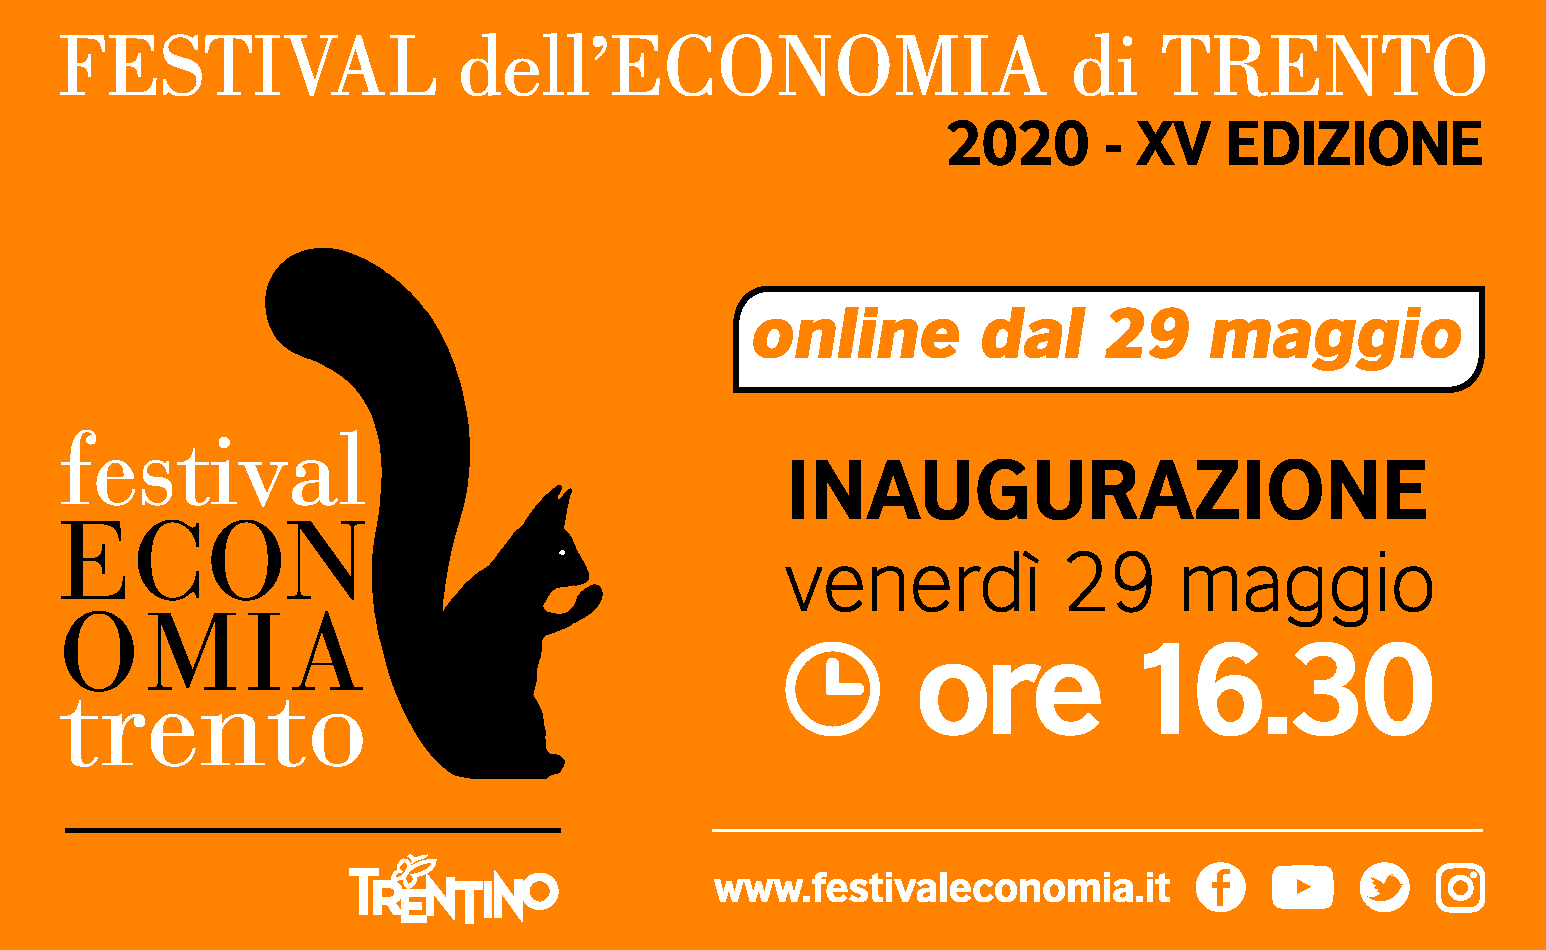 Festival dell’Economia on line